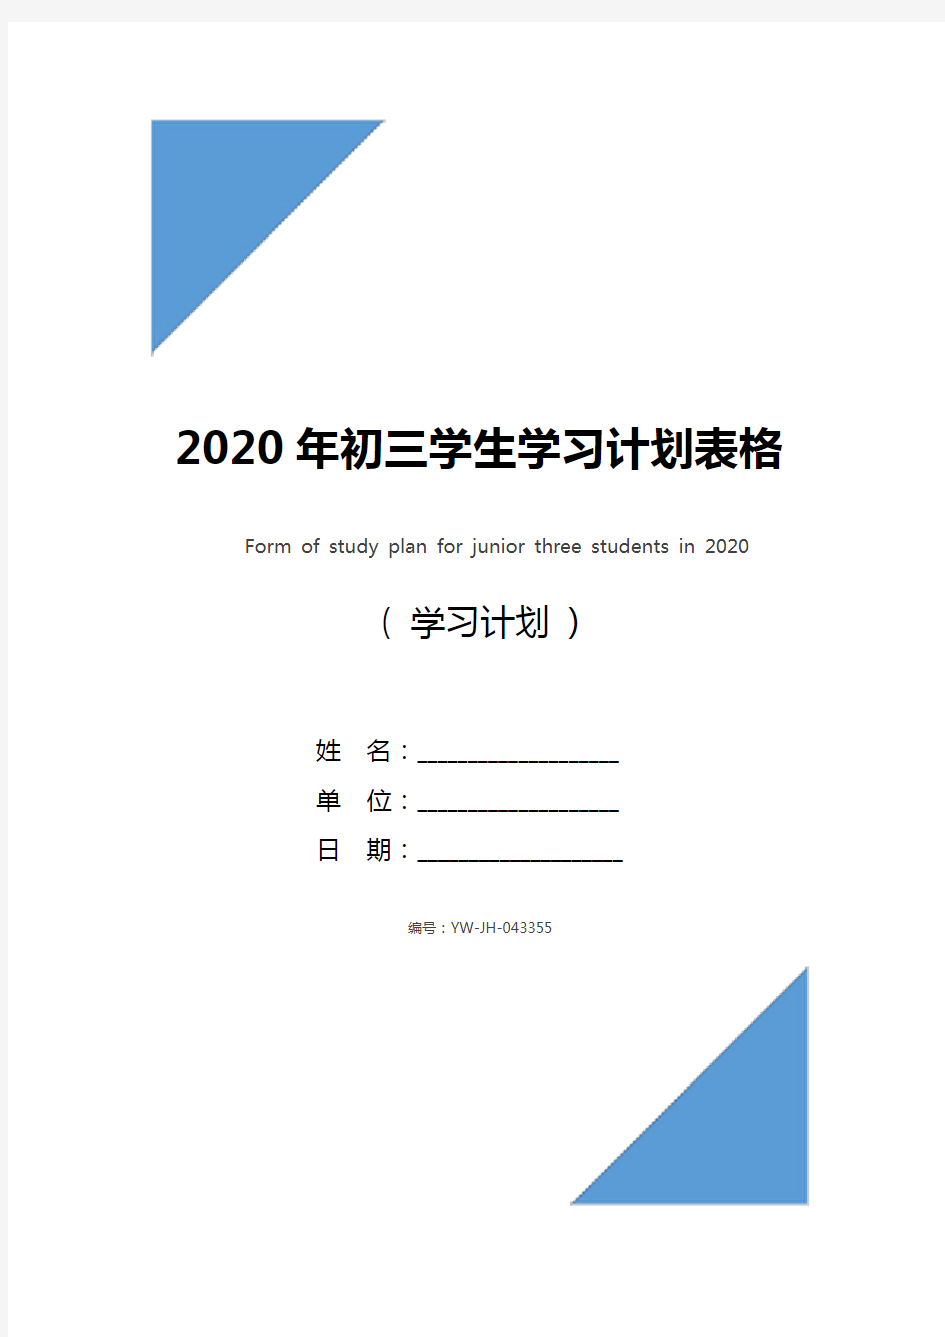 2020年初三学生学习计划表格